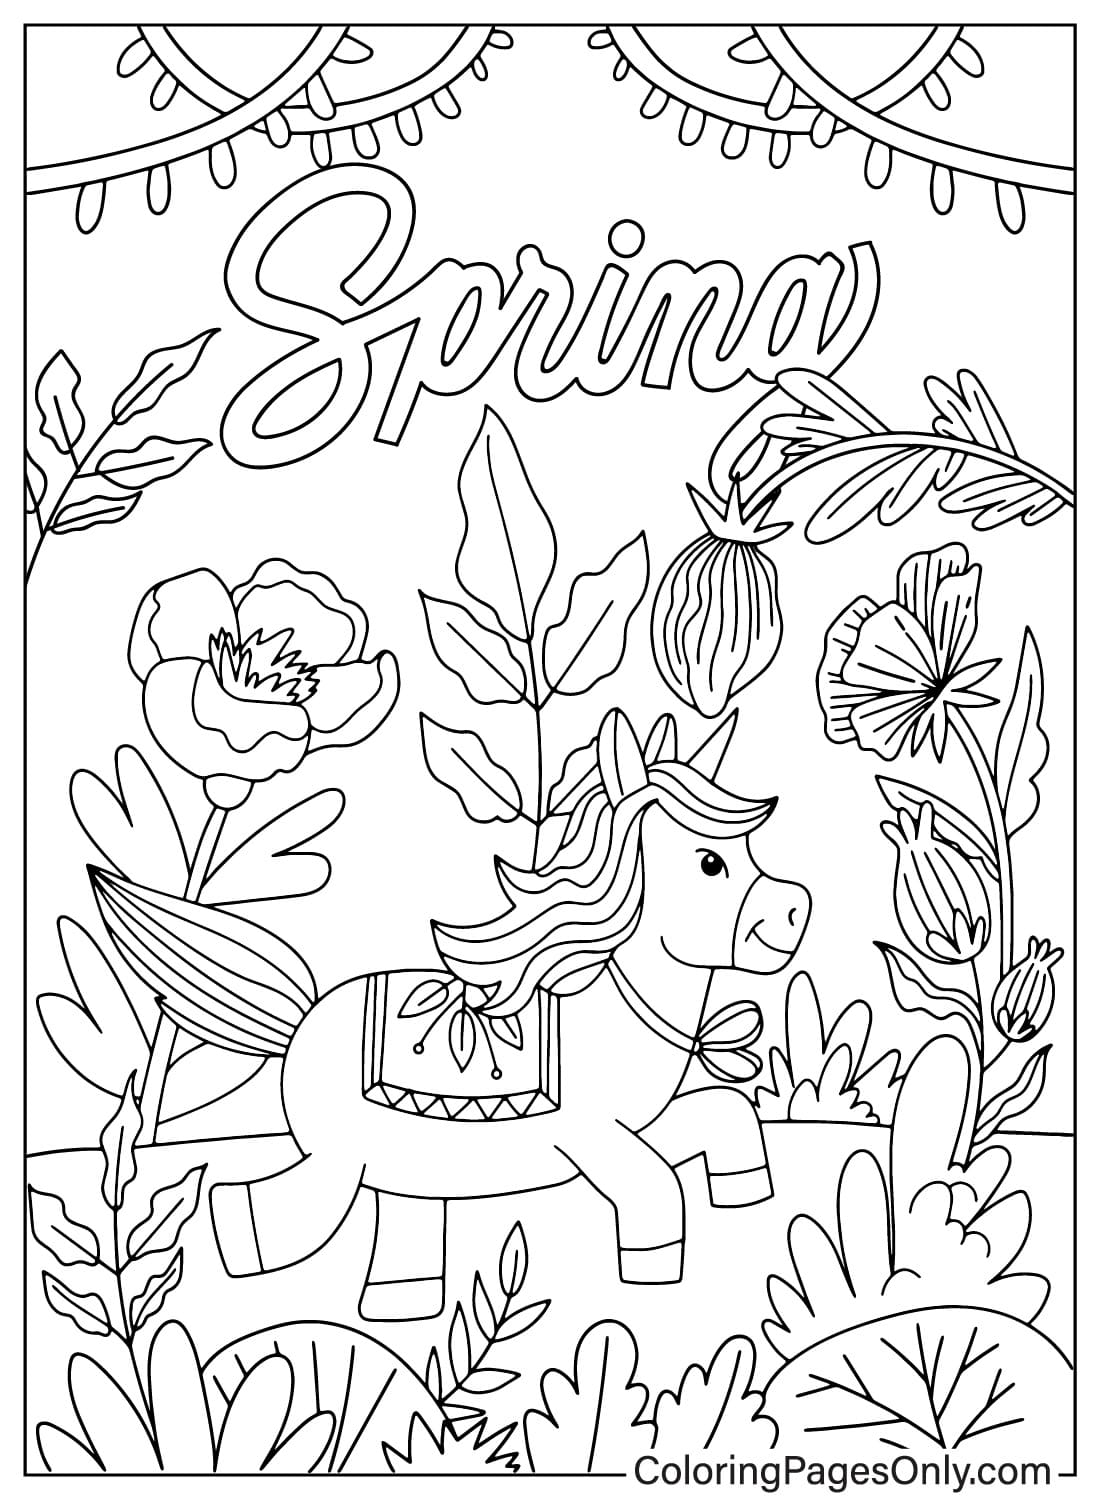 Página para colorear de primavera para imprimir gratis